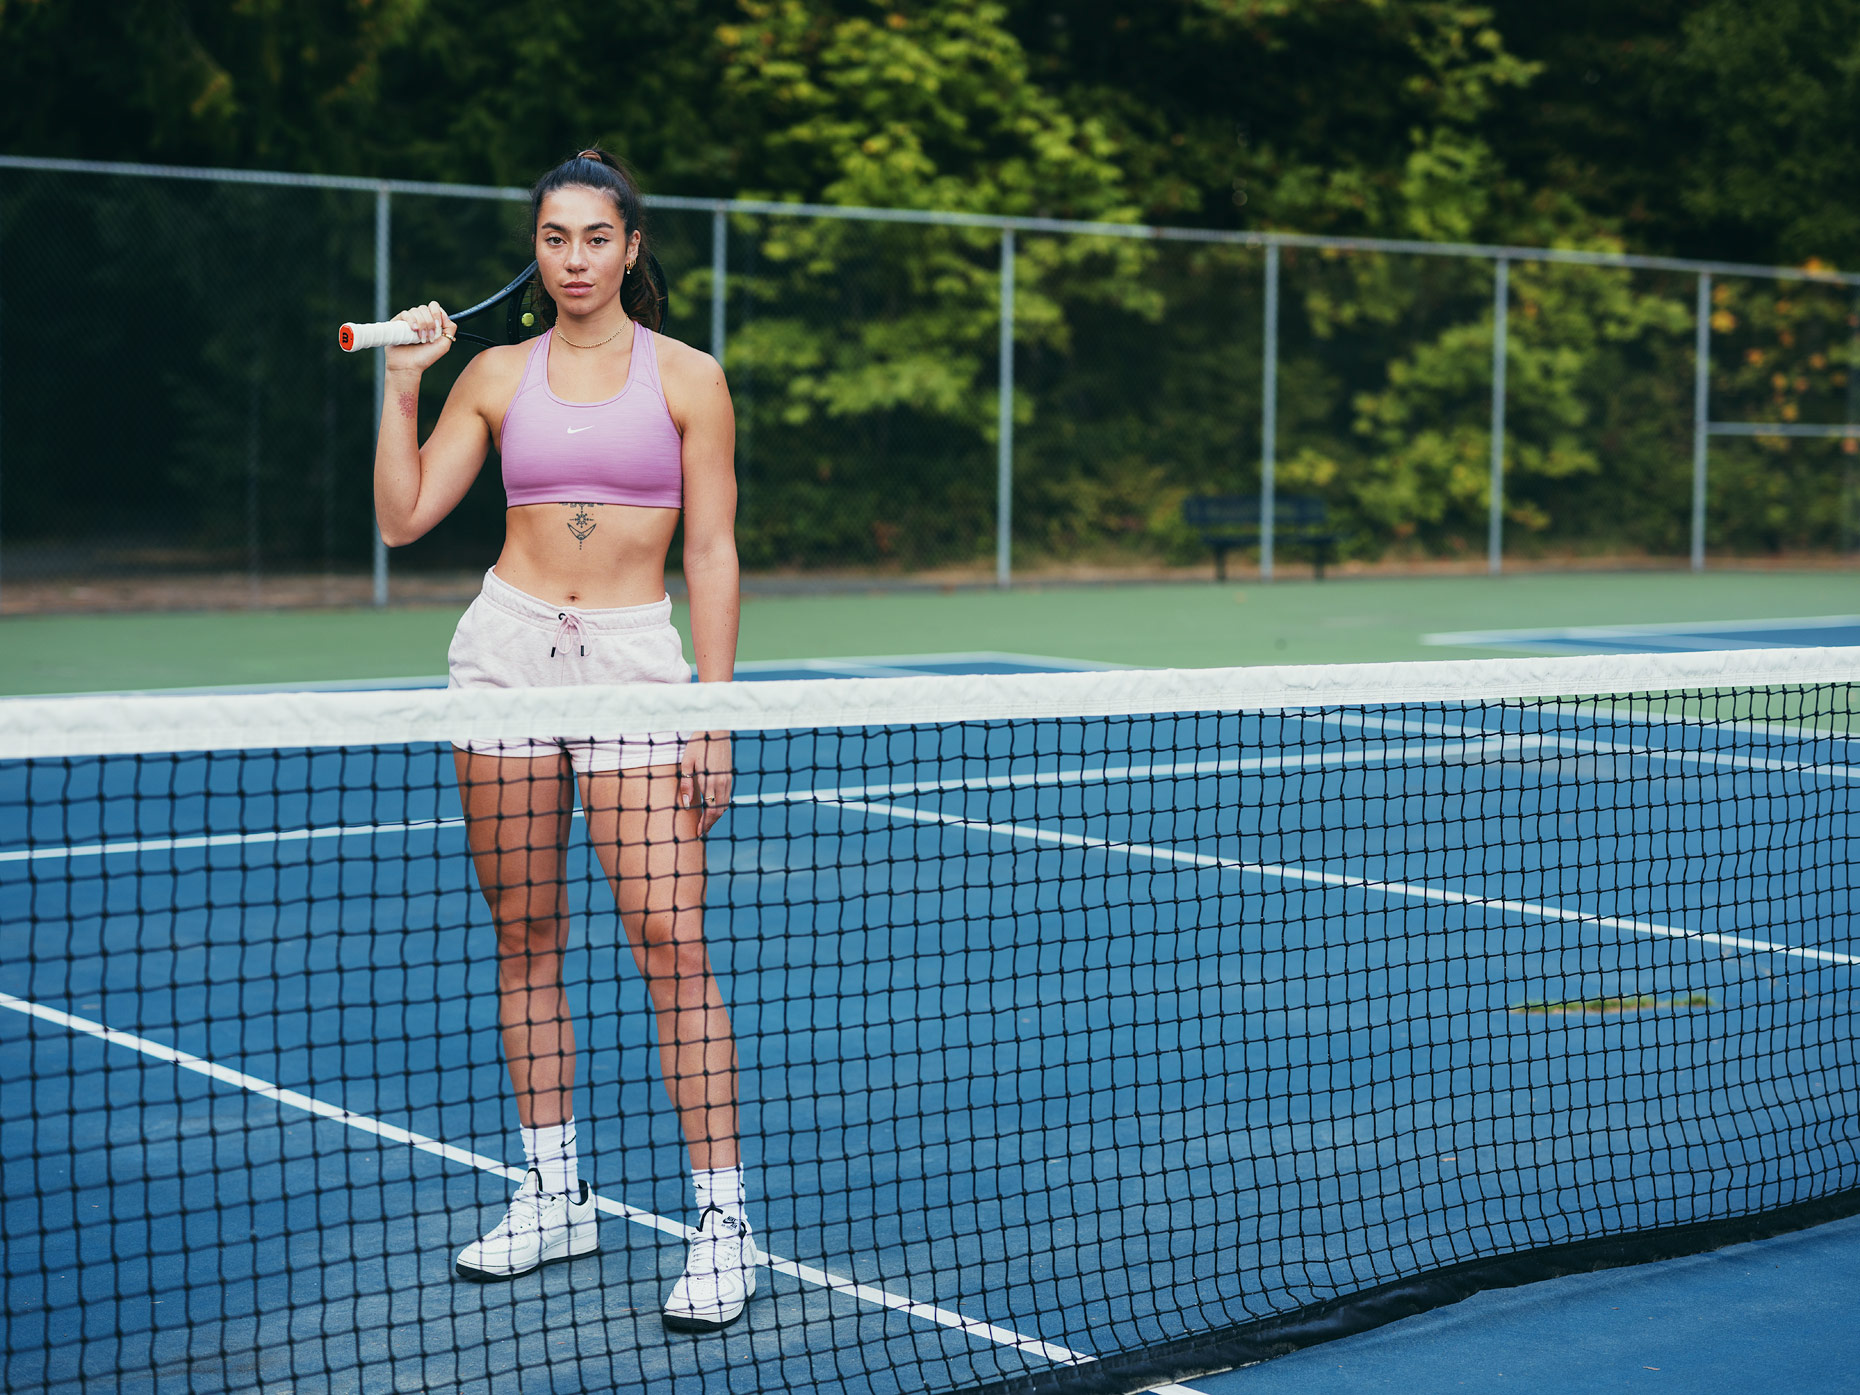 athletic tennis fashion